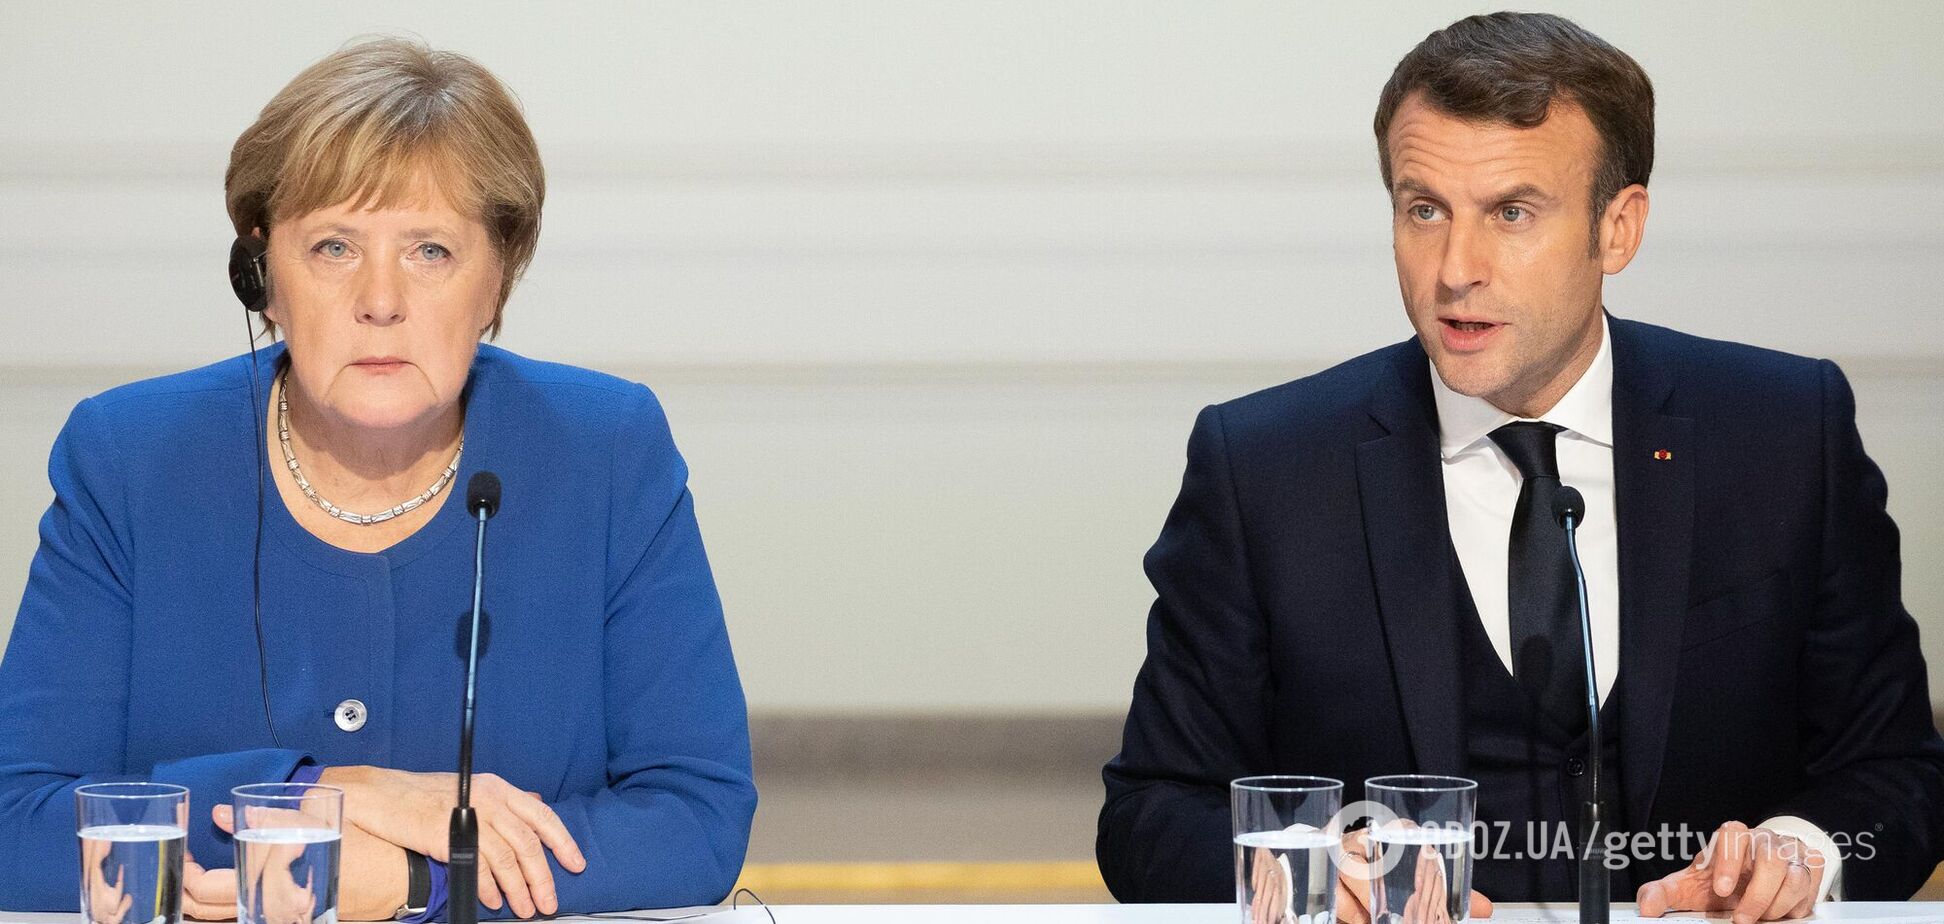 Германия готова предоставить Навальному лечение, а Франция – убежище